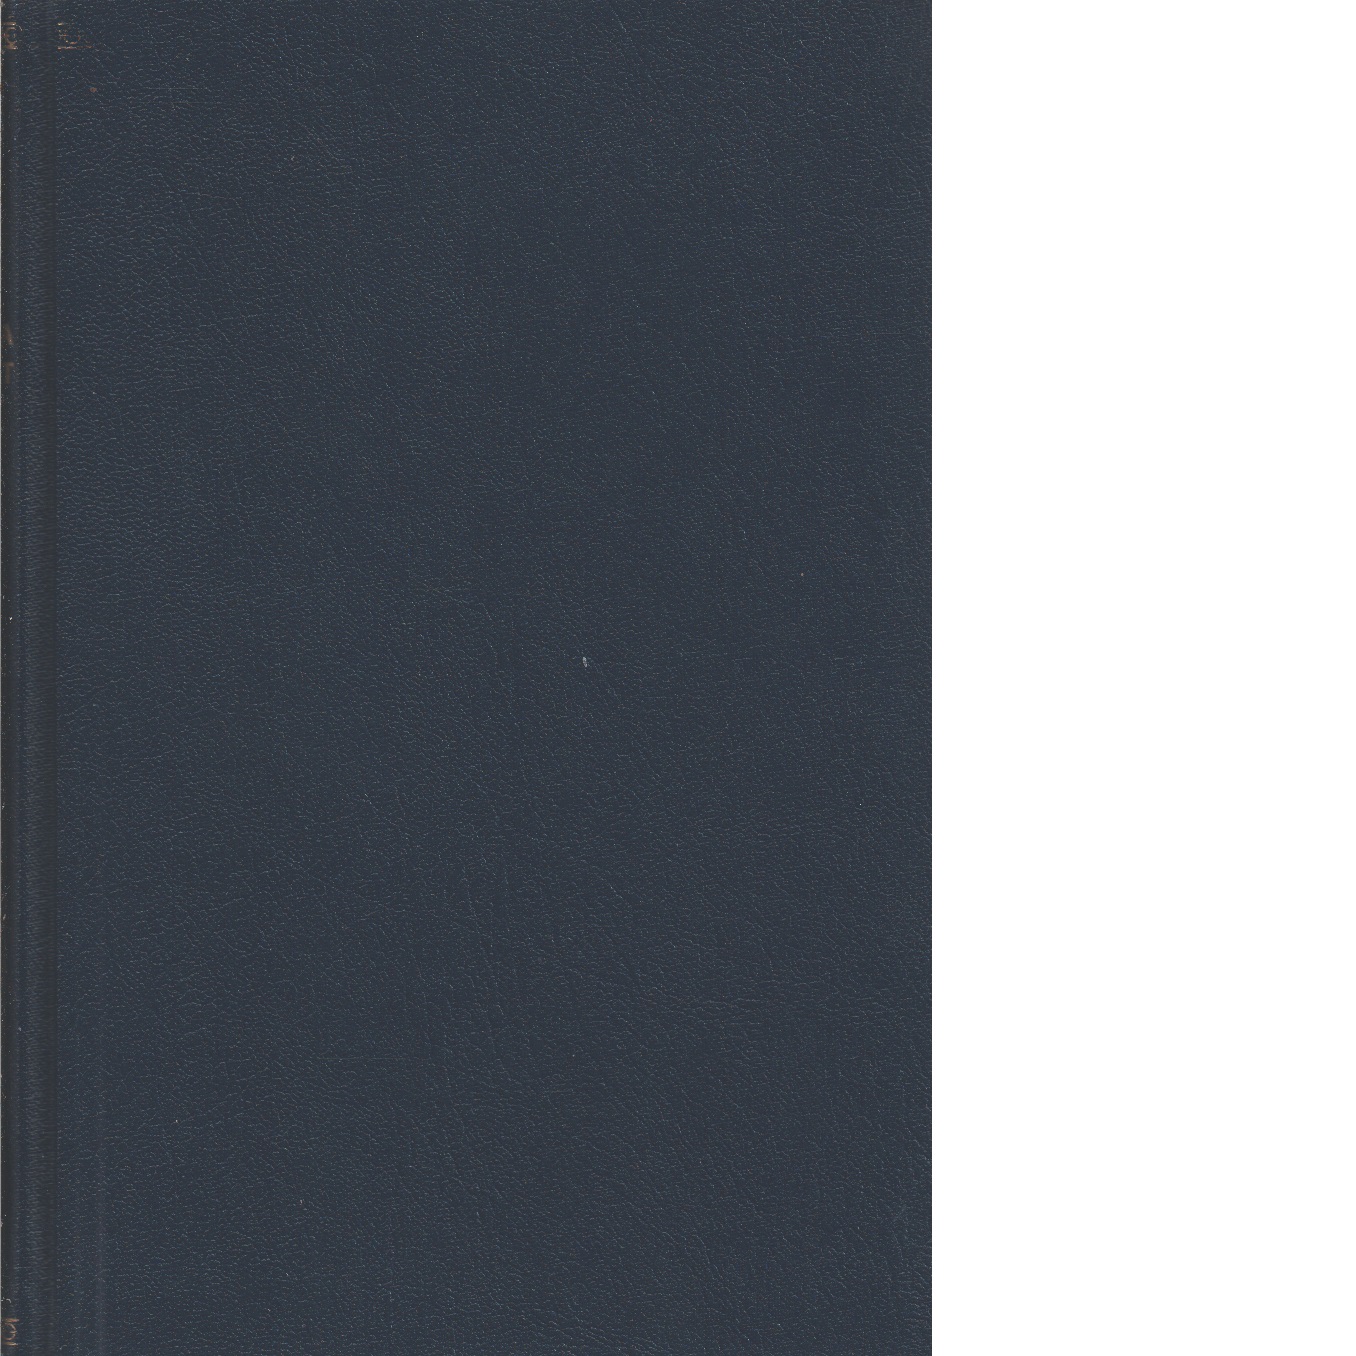 Karolinska förbundets årsbok    1922-23 - Karolinska förbundet